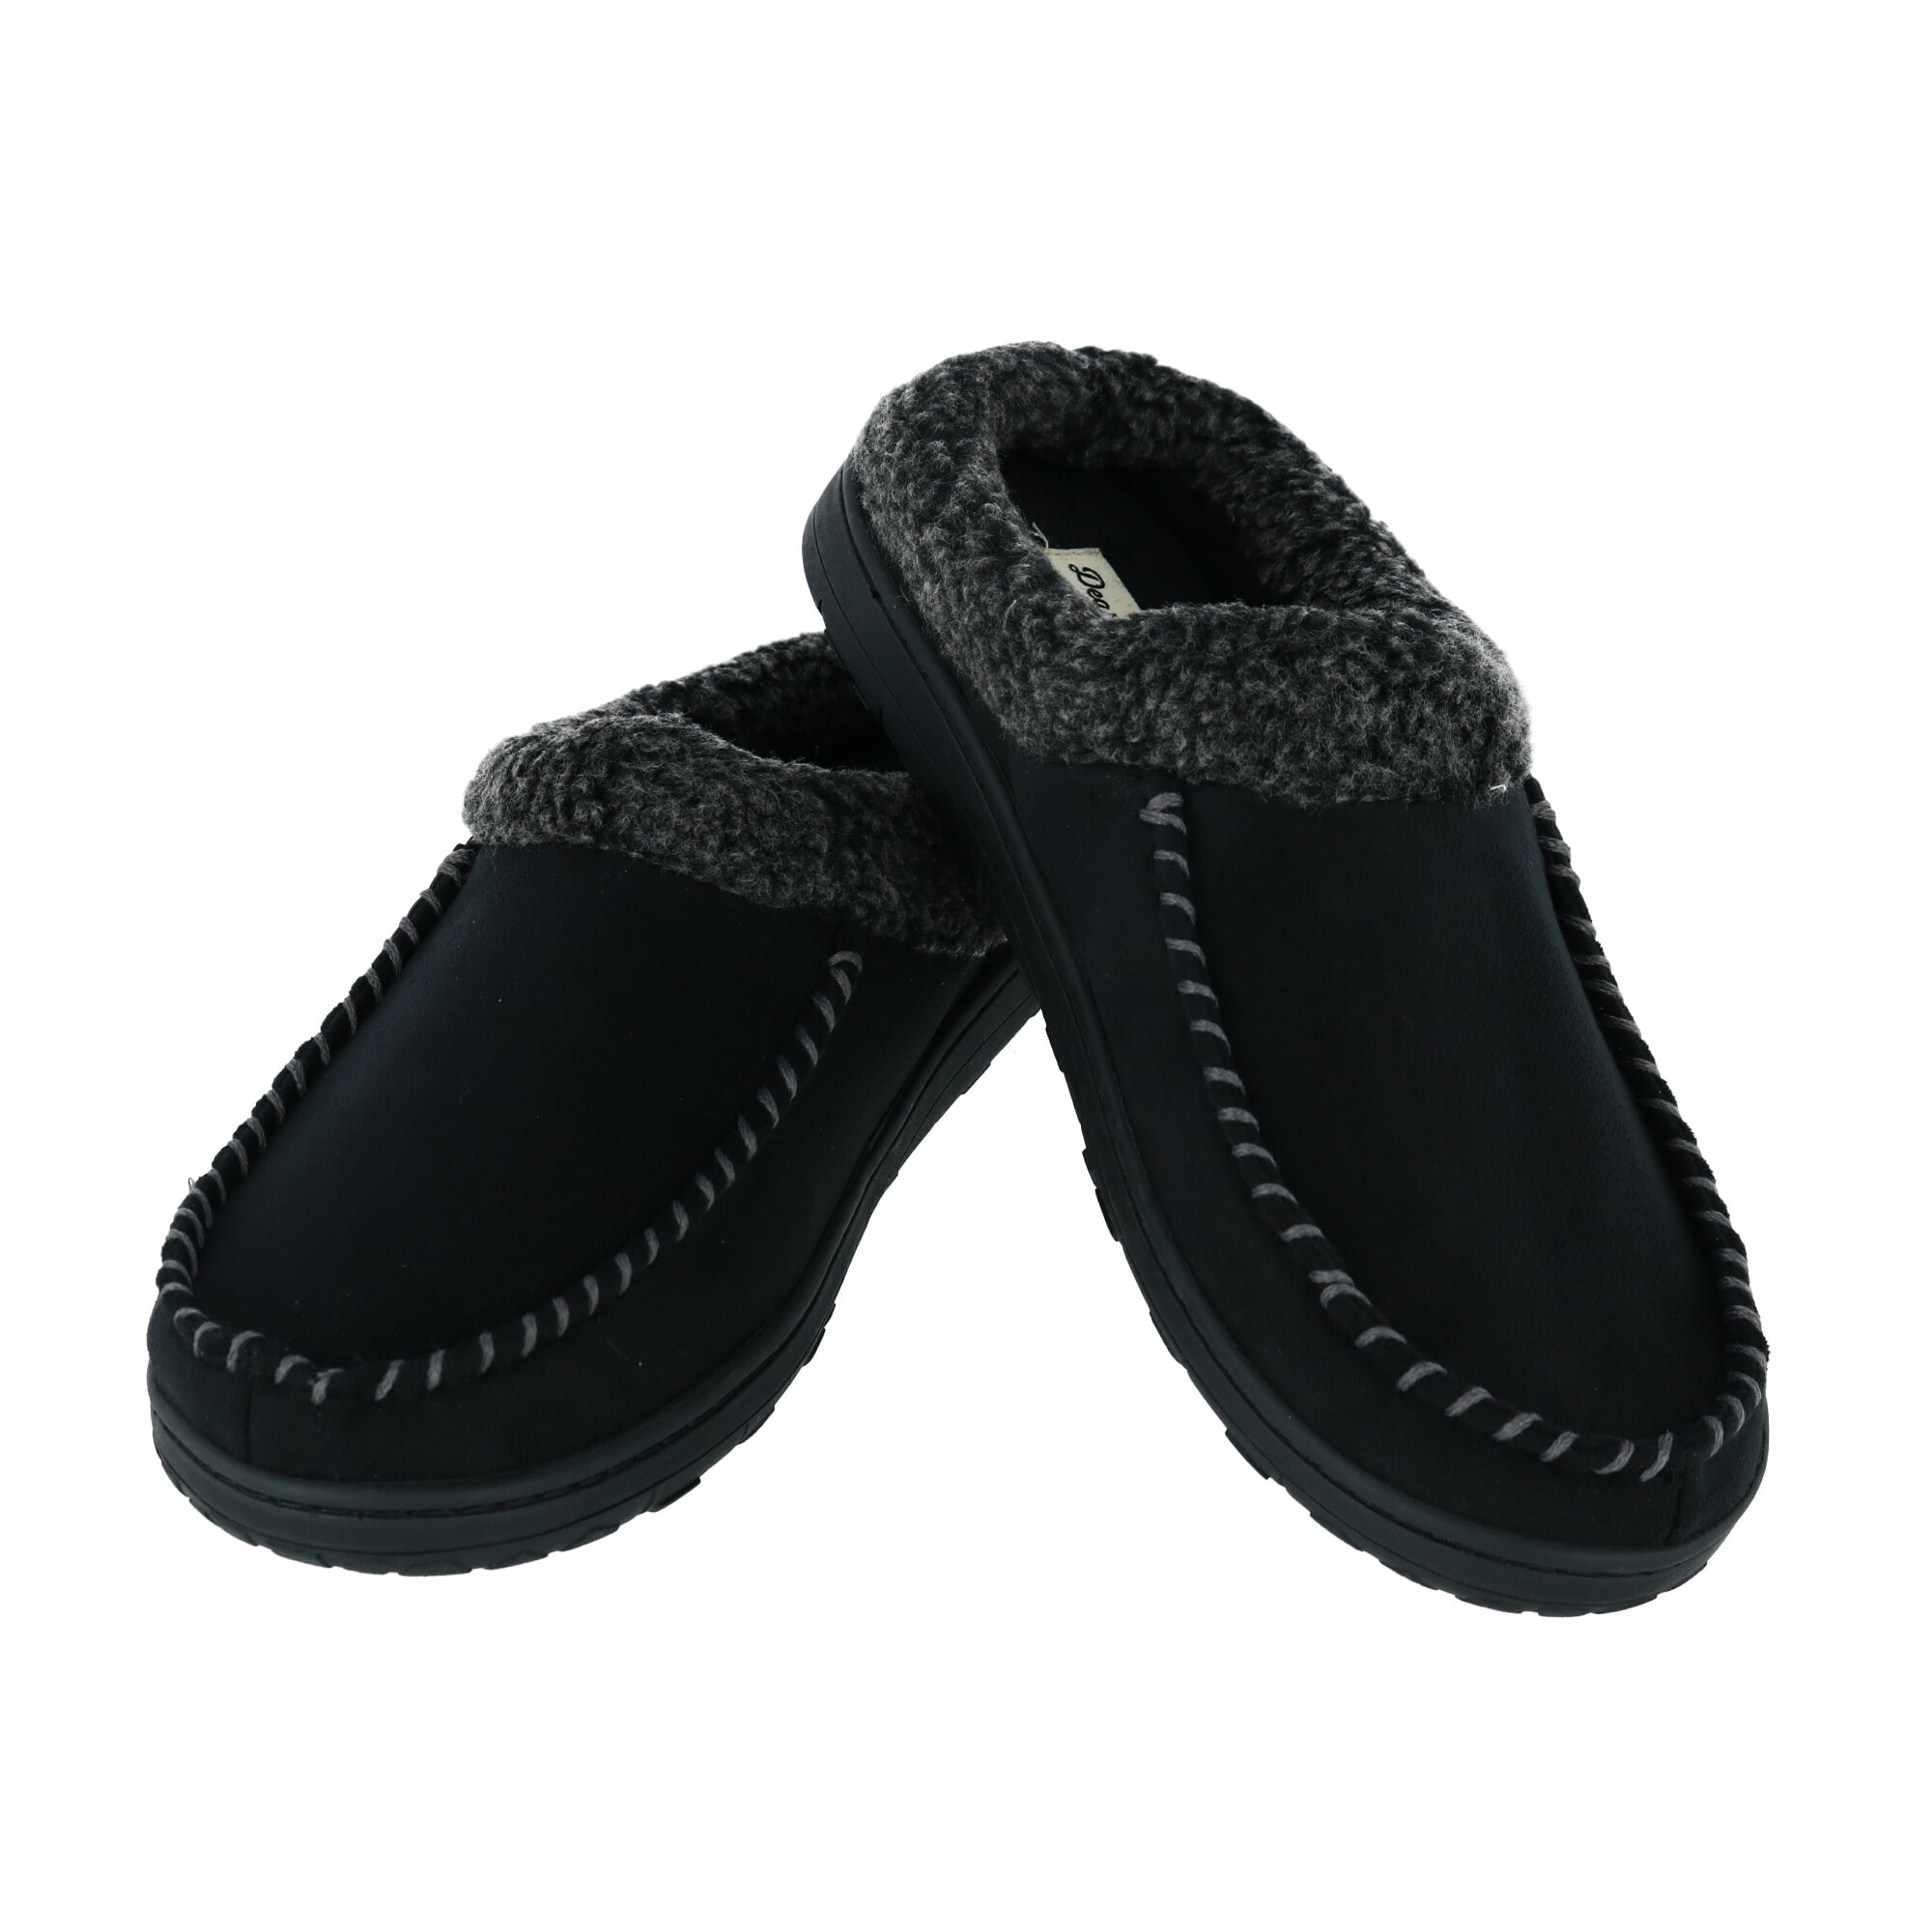 dearfoam wide width slippers